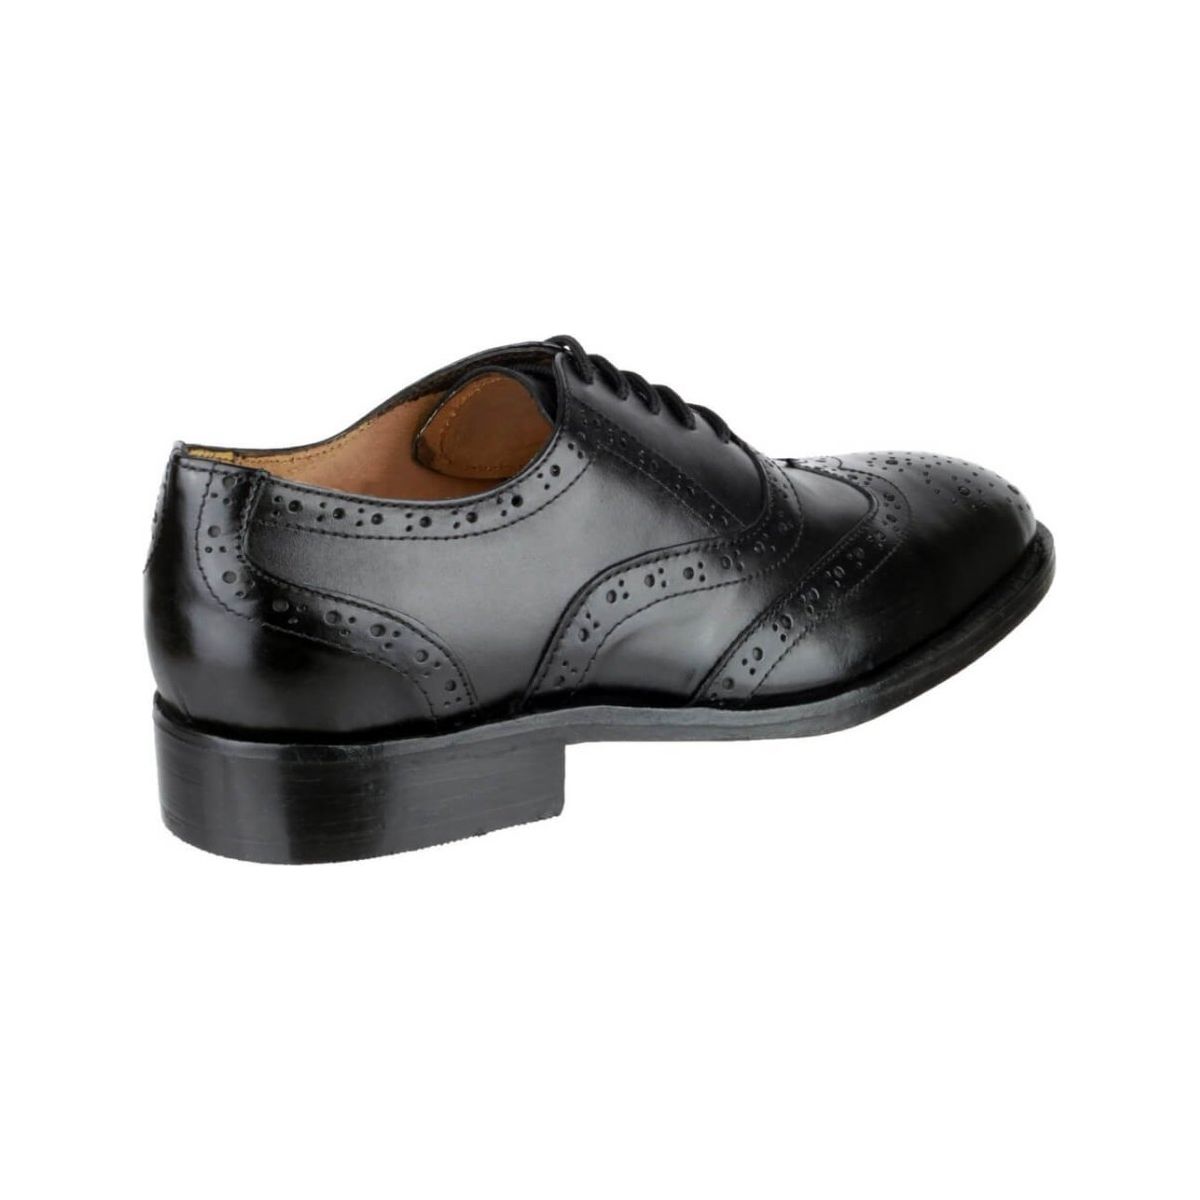 Amblers Ben Oxford Brogue Shoes Mens - workweargurus.com